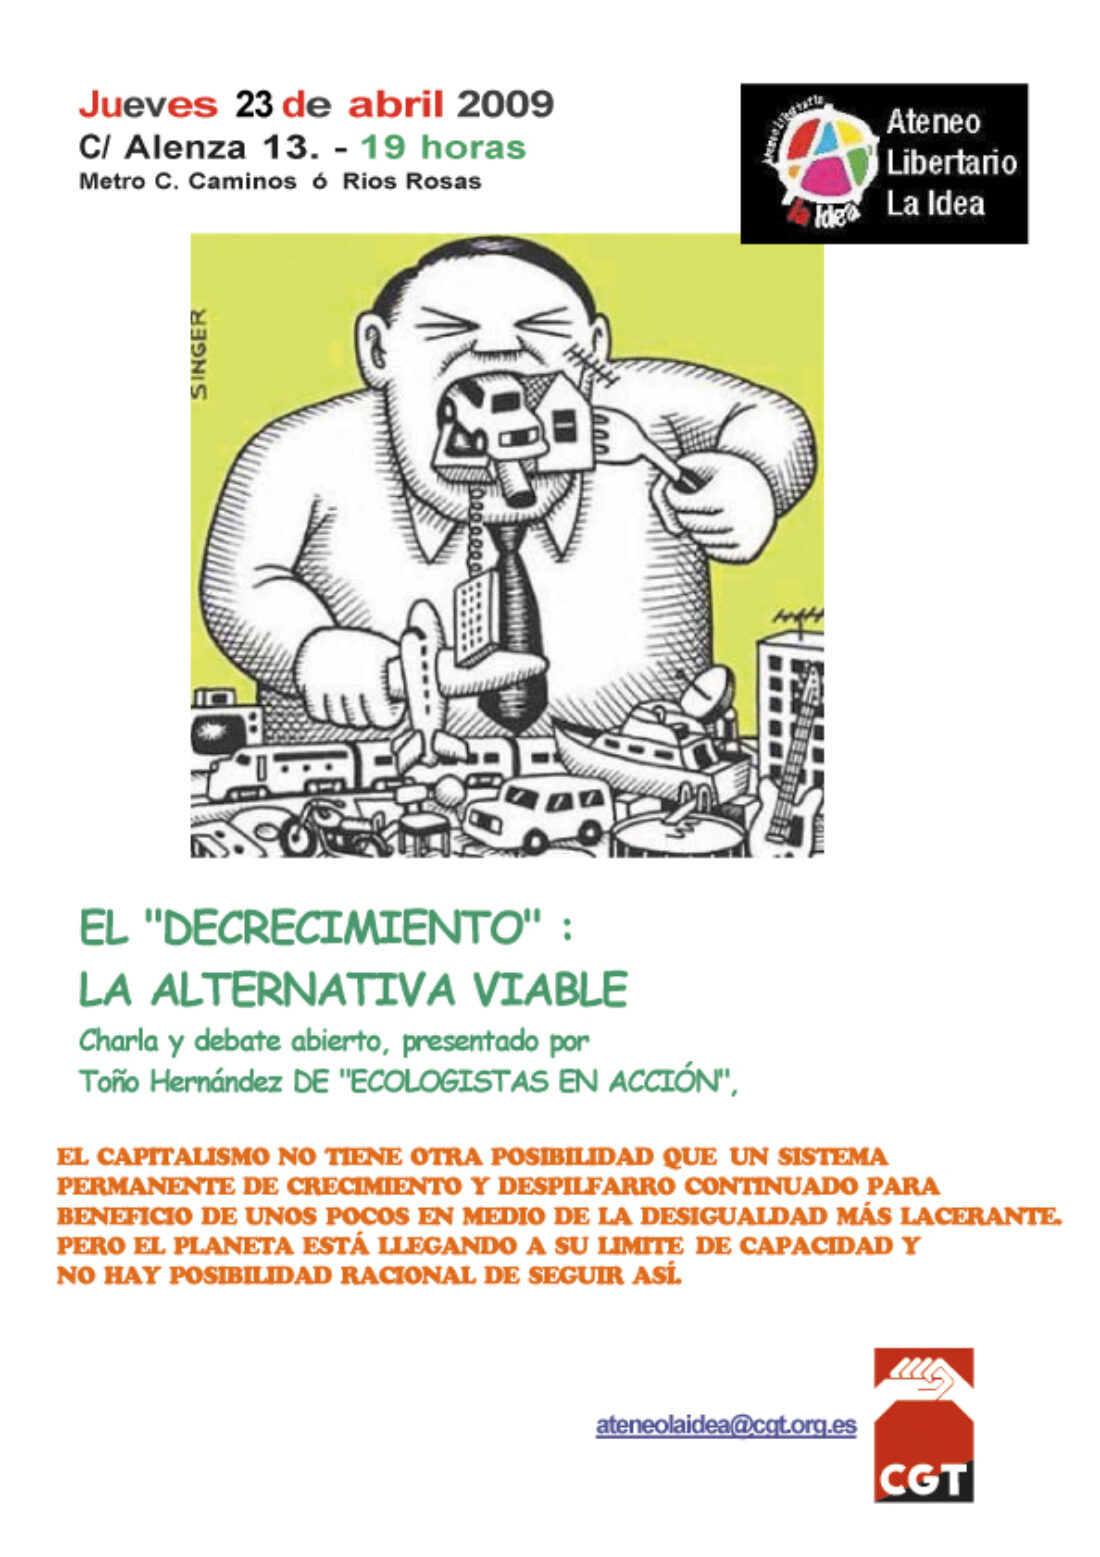 Ateneo Libertario «La Idea» (CGT Madrid) : jueves 23, Decrecimiento Sostenible